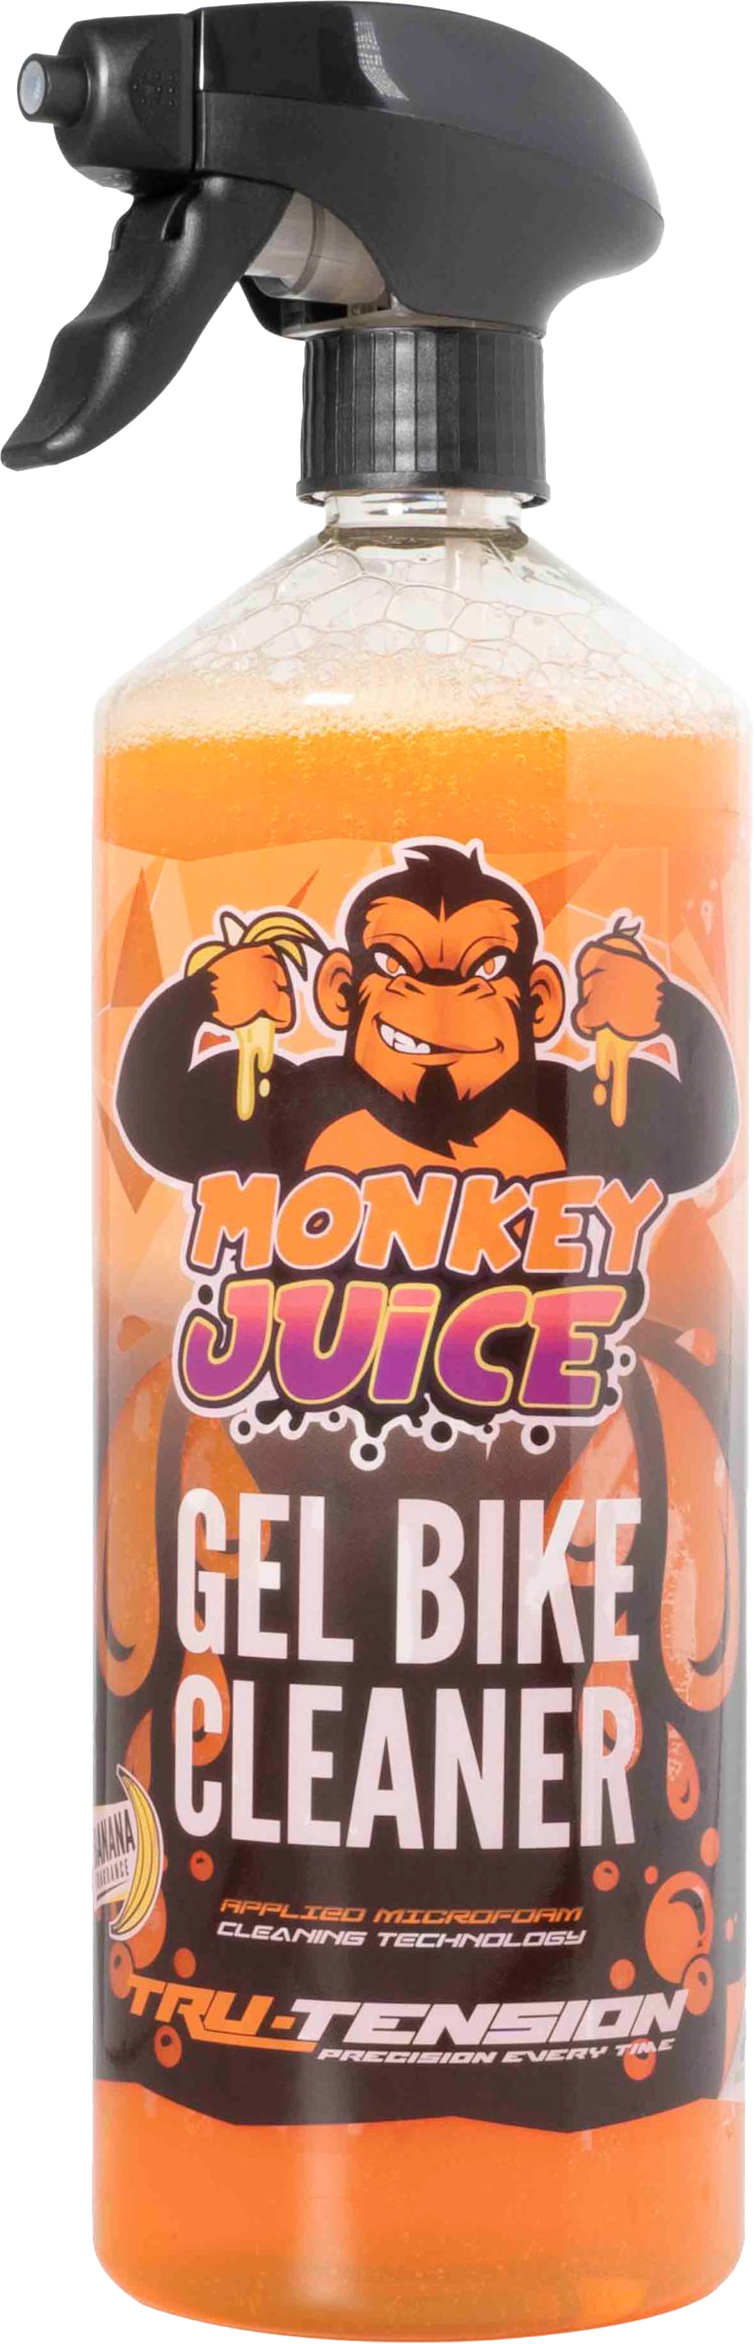 Tru Tension - Monkey Juice Gel Bike Cleaner 1l Spray Bottle - 15